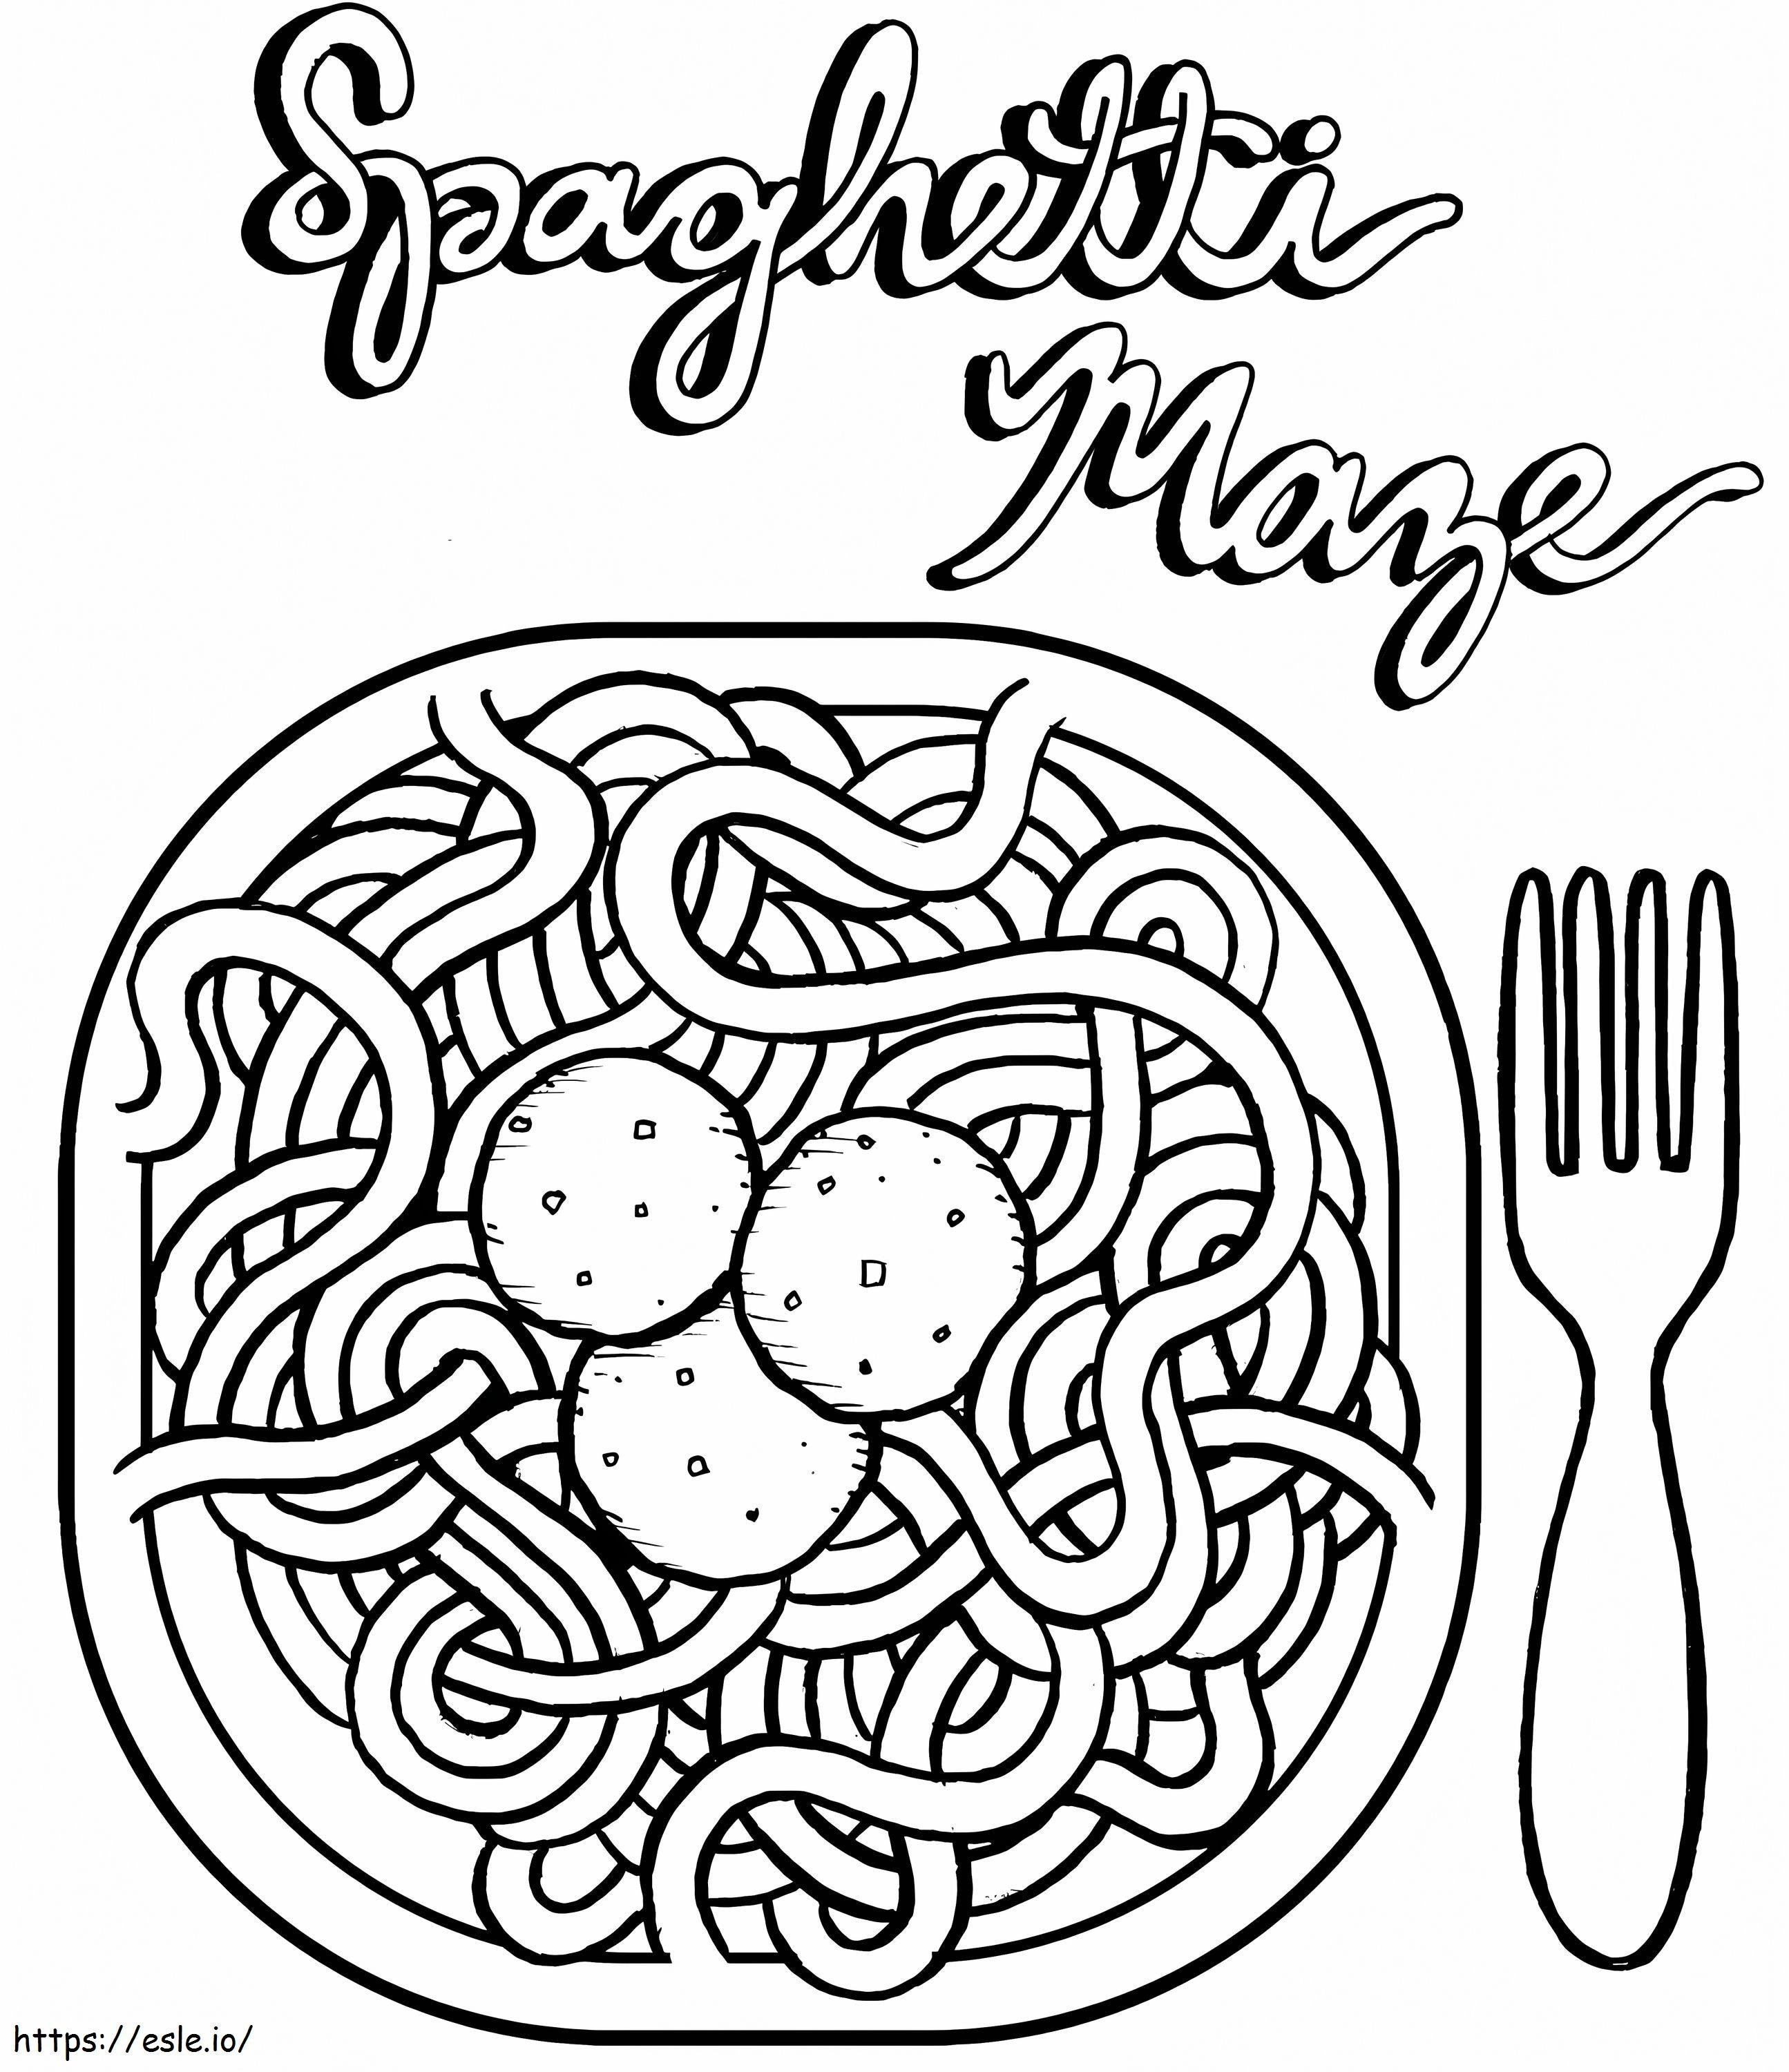 Pasta Spaghetti En Gehaktballetjes kleurplaat kleurplaat